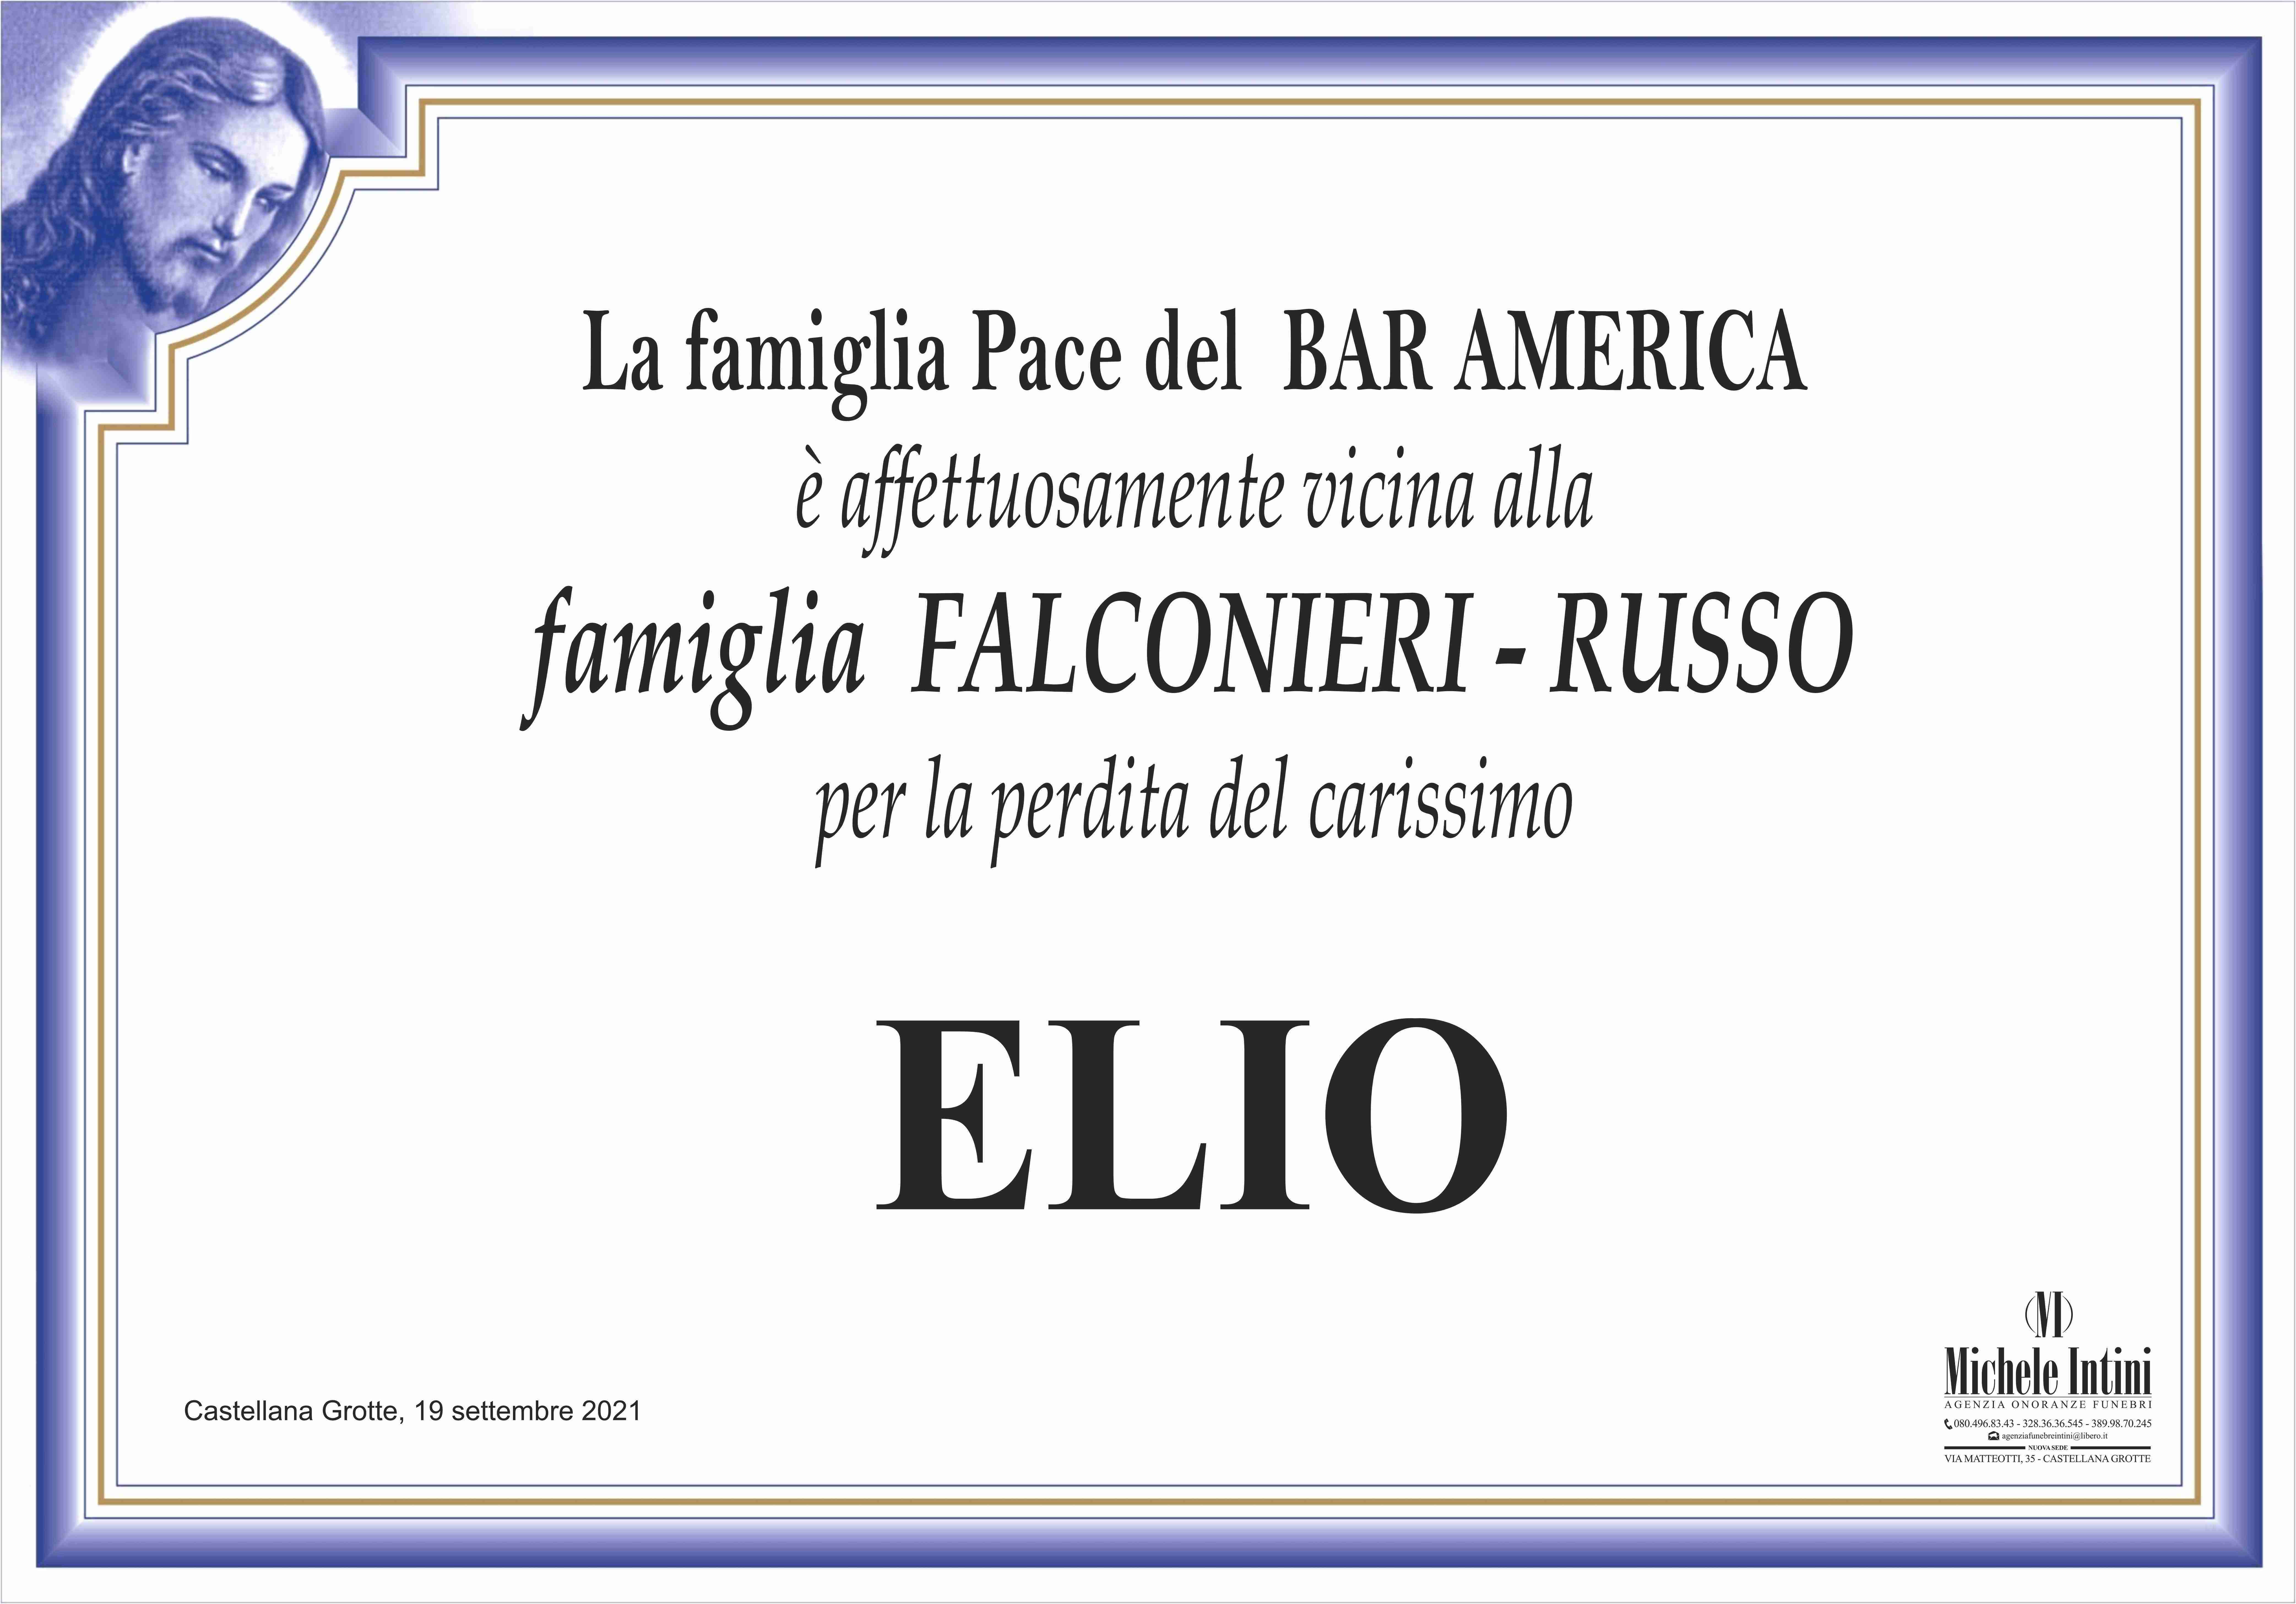 Elio Falconieri